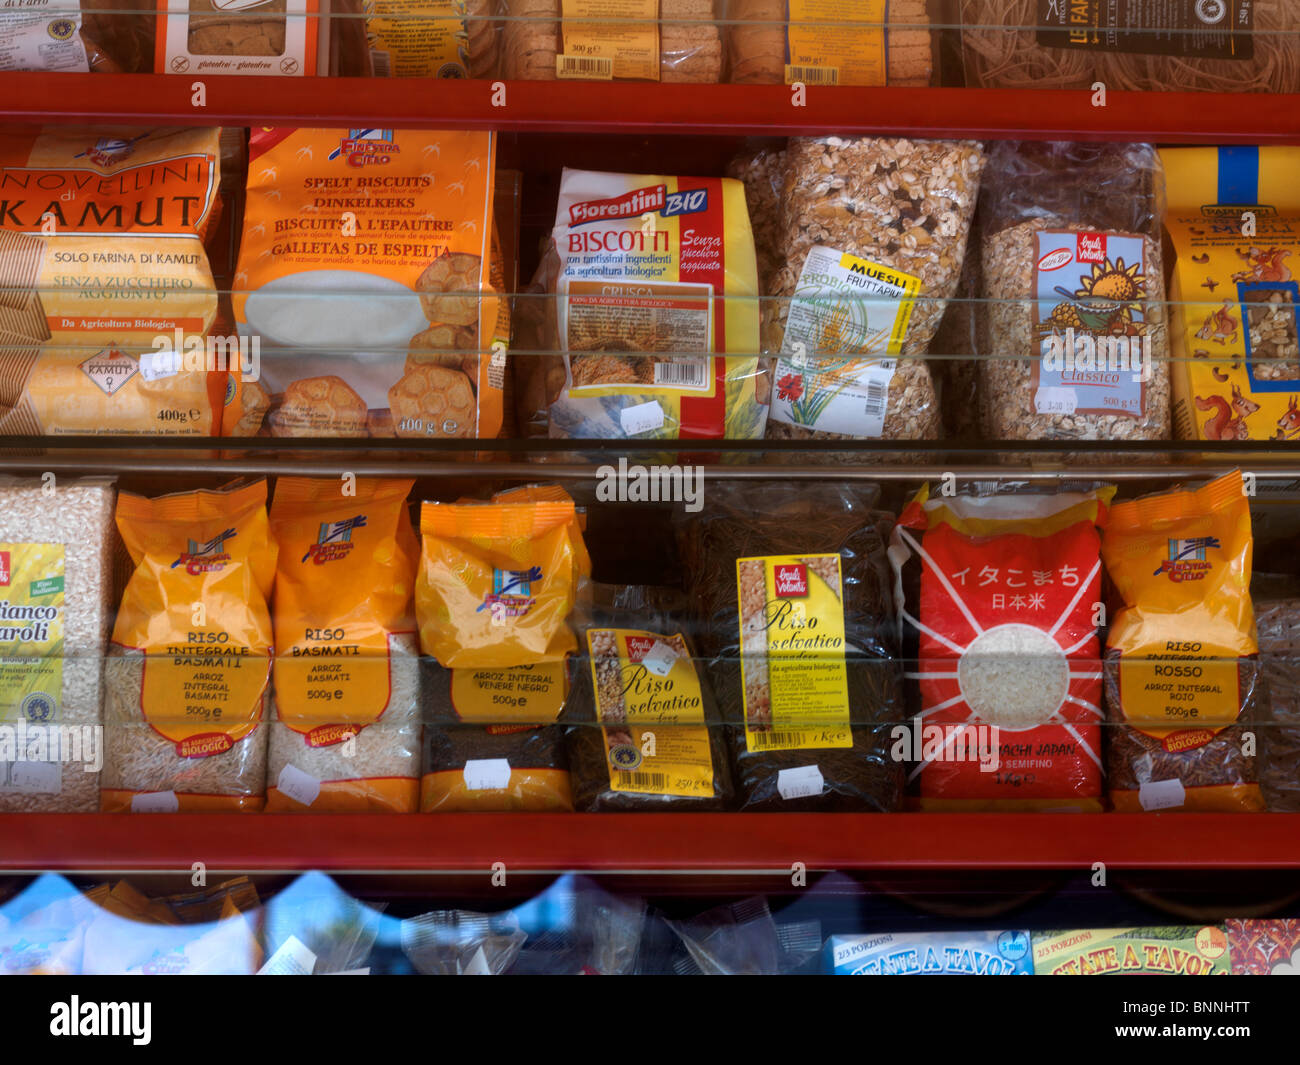 Biscotti di Riso & Grain sugli scaffali del supermercato catania sicilia  italia Foto stock - Alamy